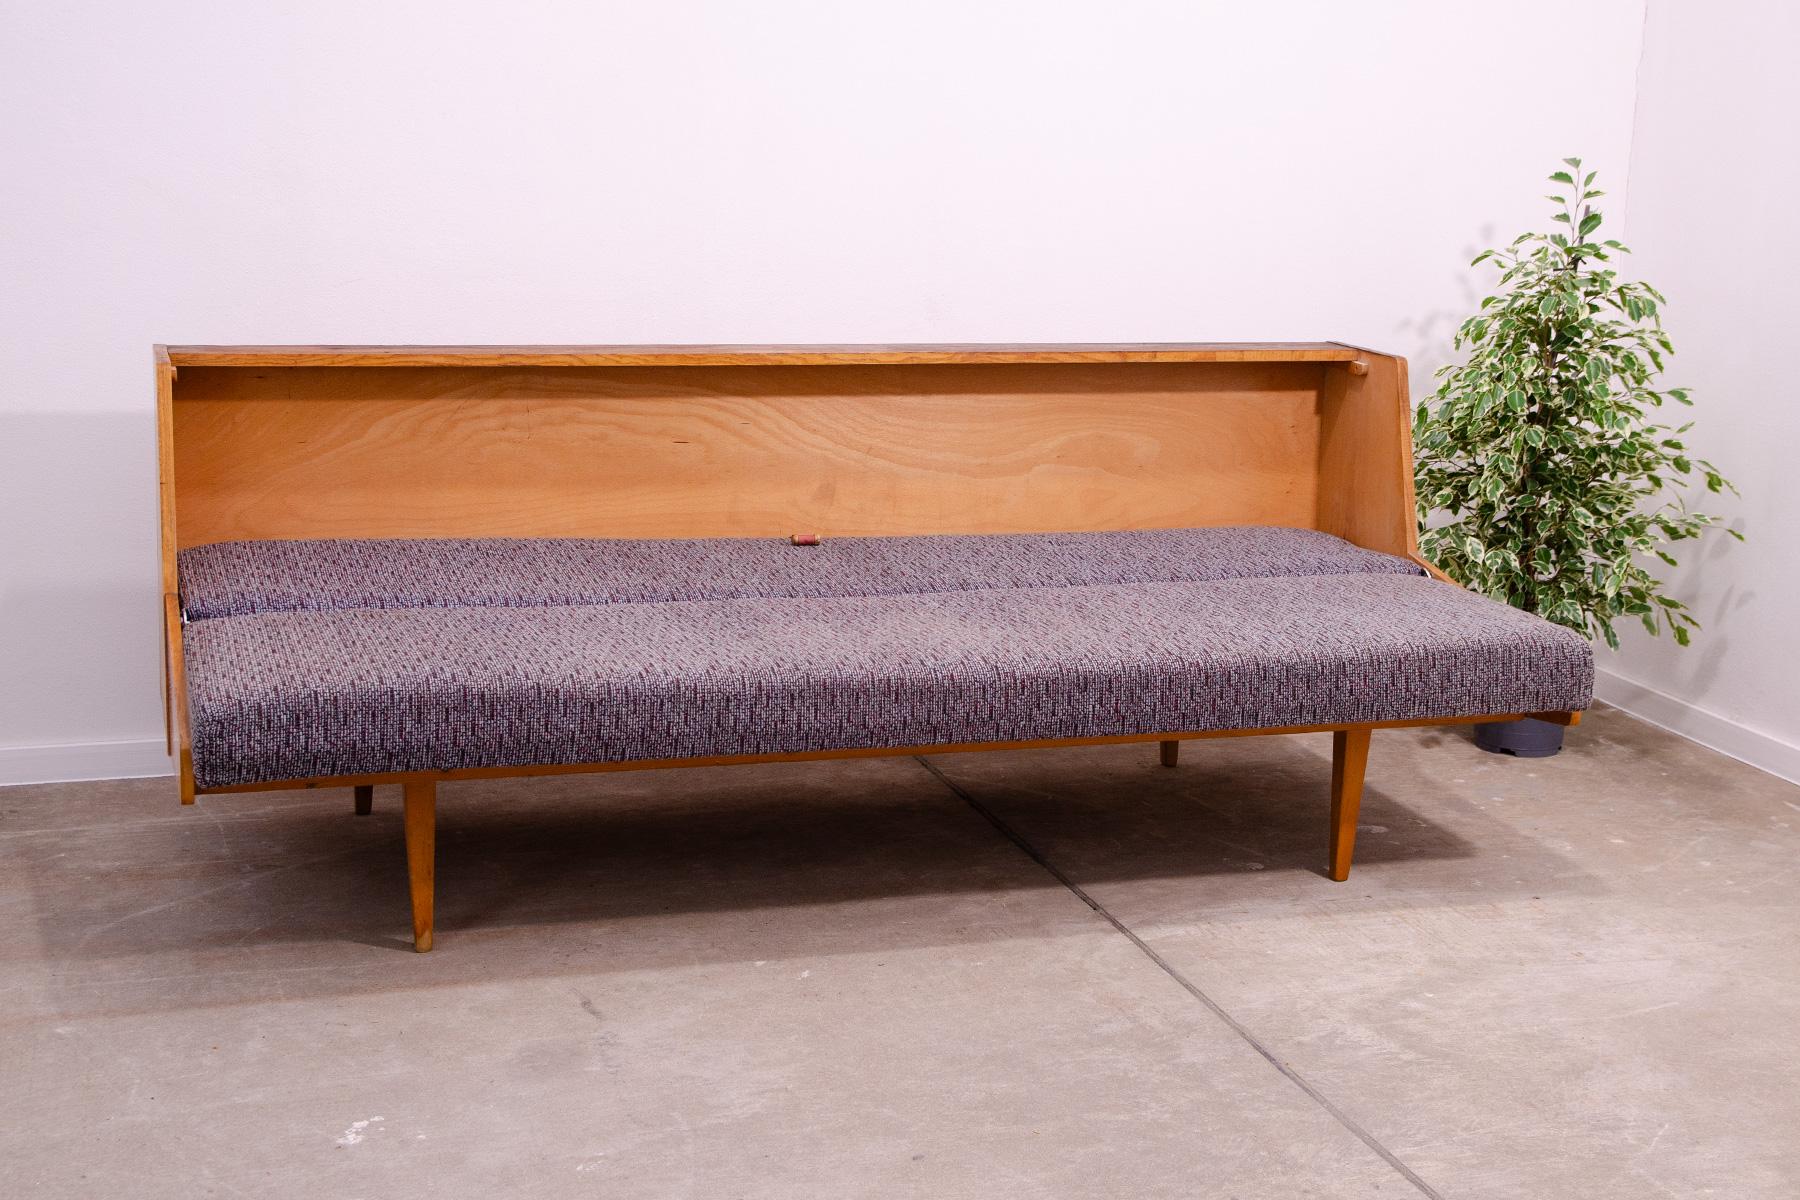 Midcentury Folding Sofabed by Tatra nabytok, 1970s, Czechoslovakia For Sale 12